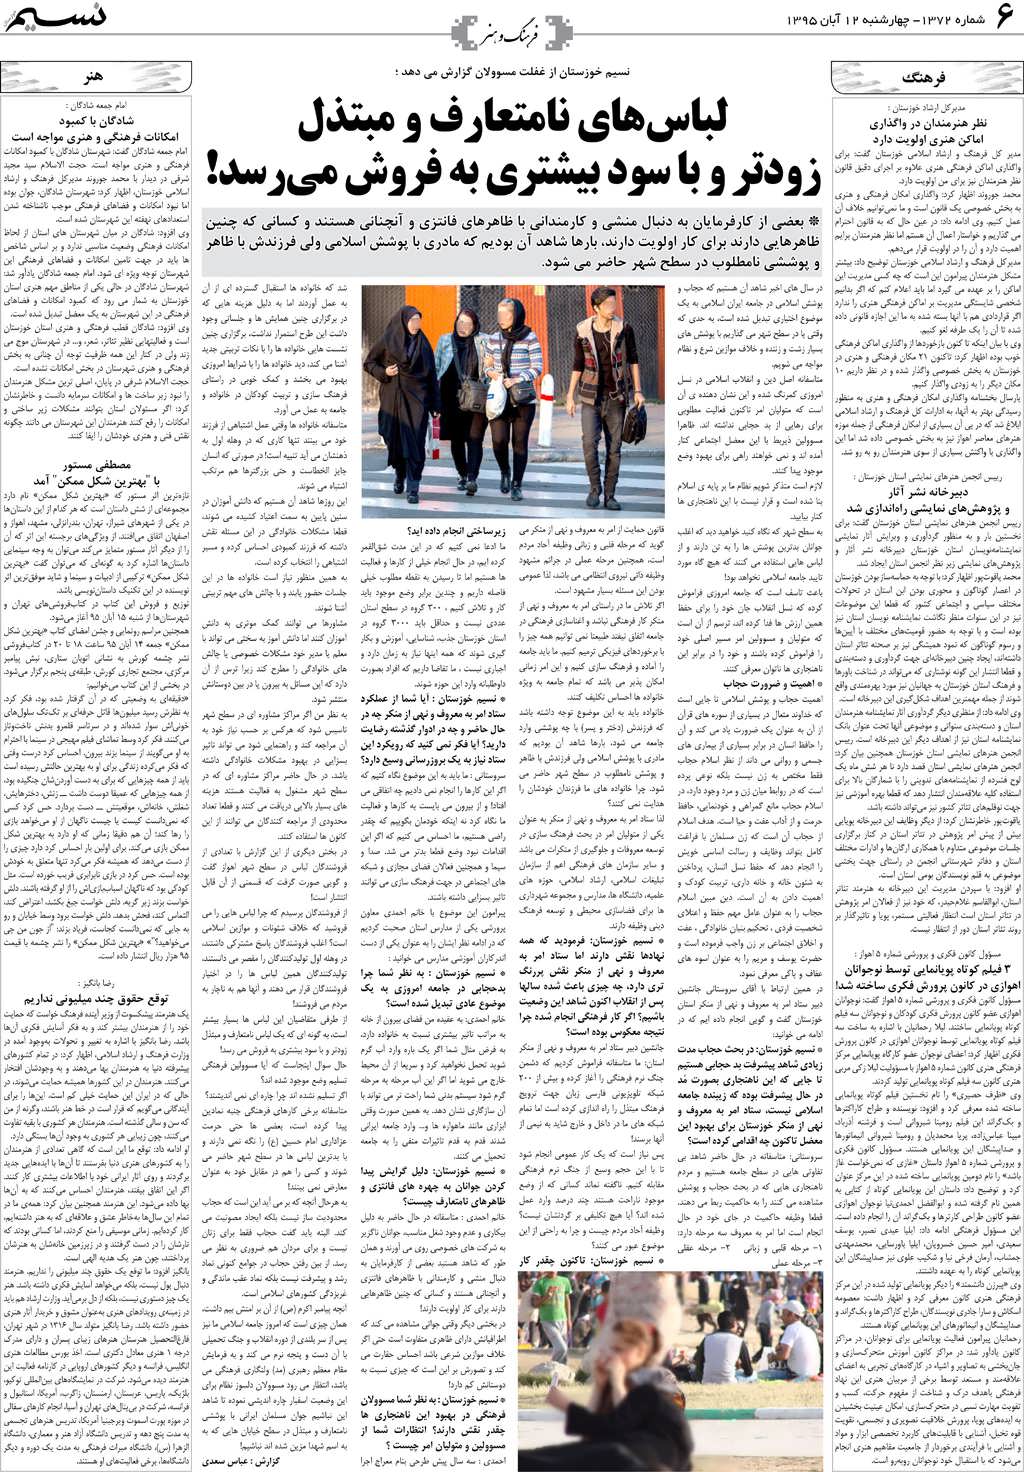 صفحه فرهنگ و هنر روزنامه نسیم شماره 1372